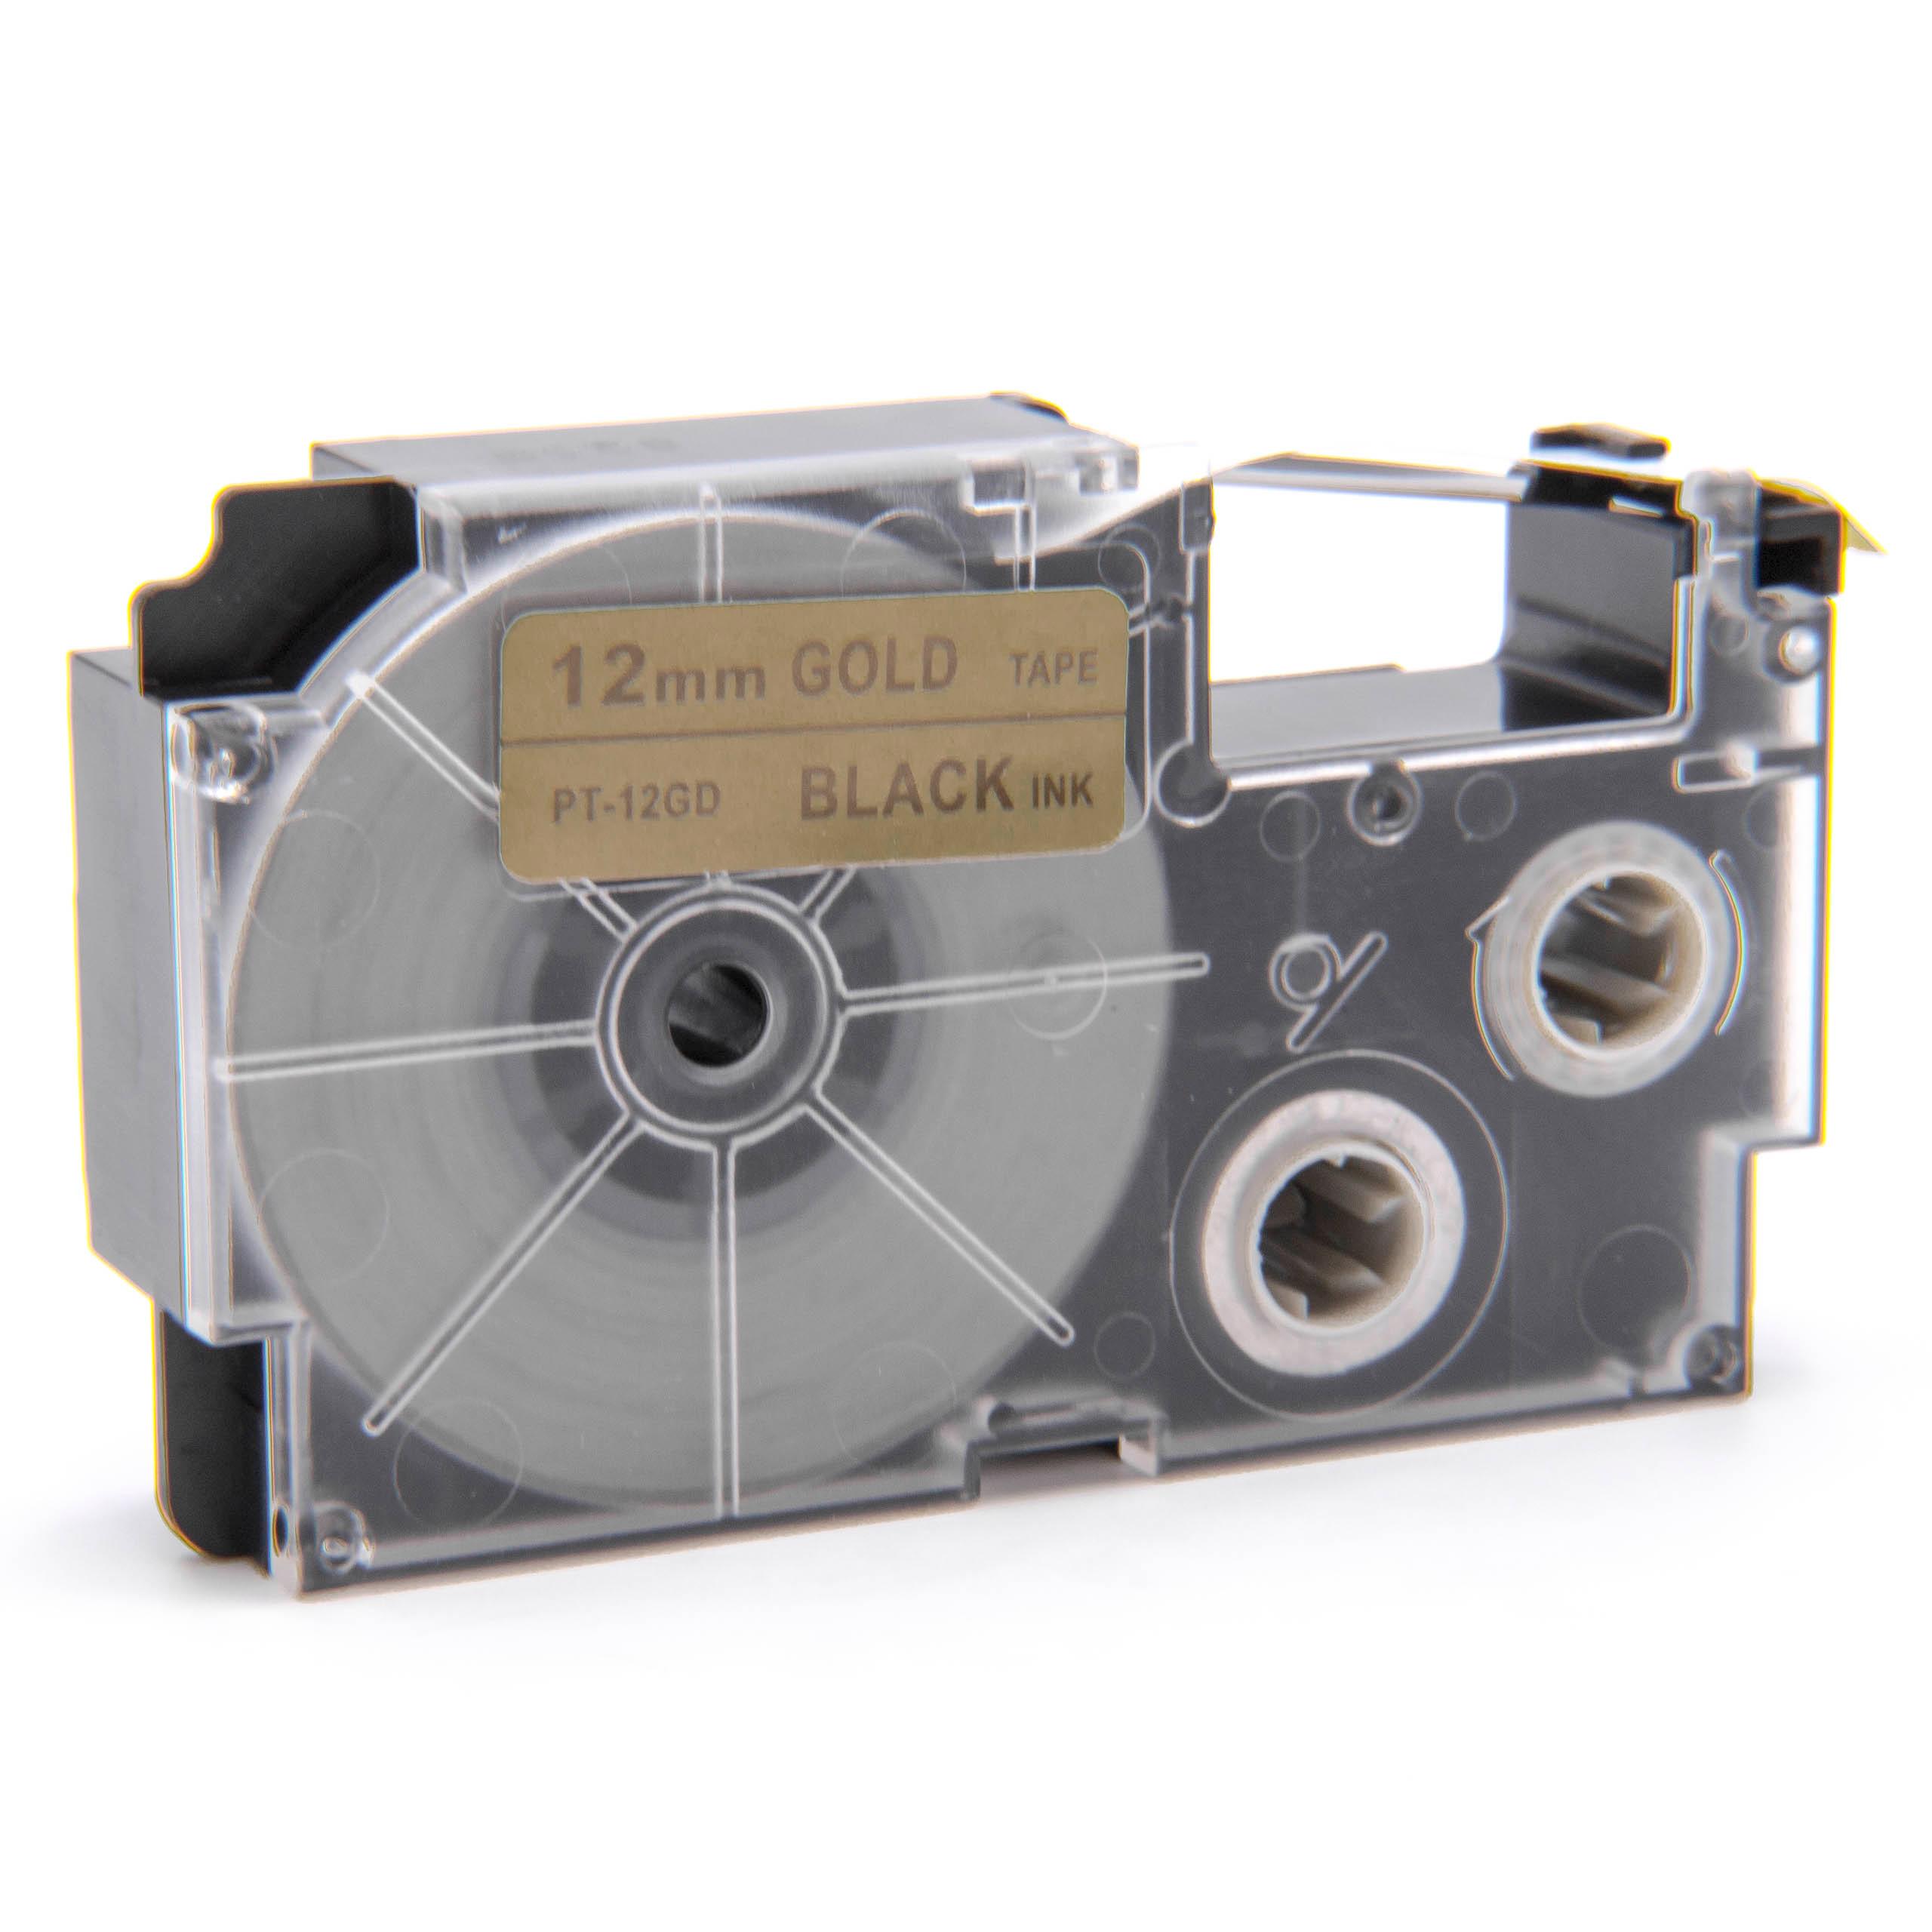 Cassette à ruban remplace Casio XR-12GD, XR-12GD1 - 12mm lettrage Noir ruban Or